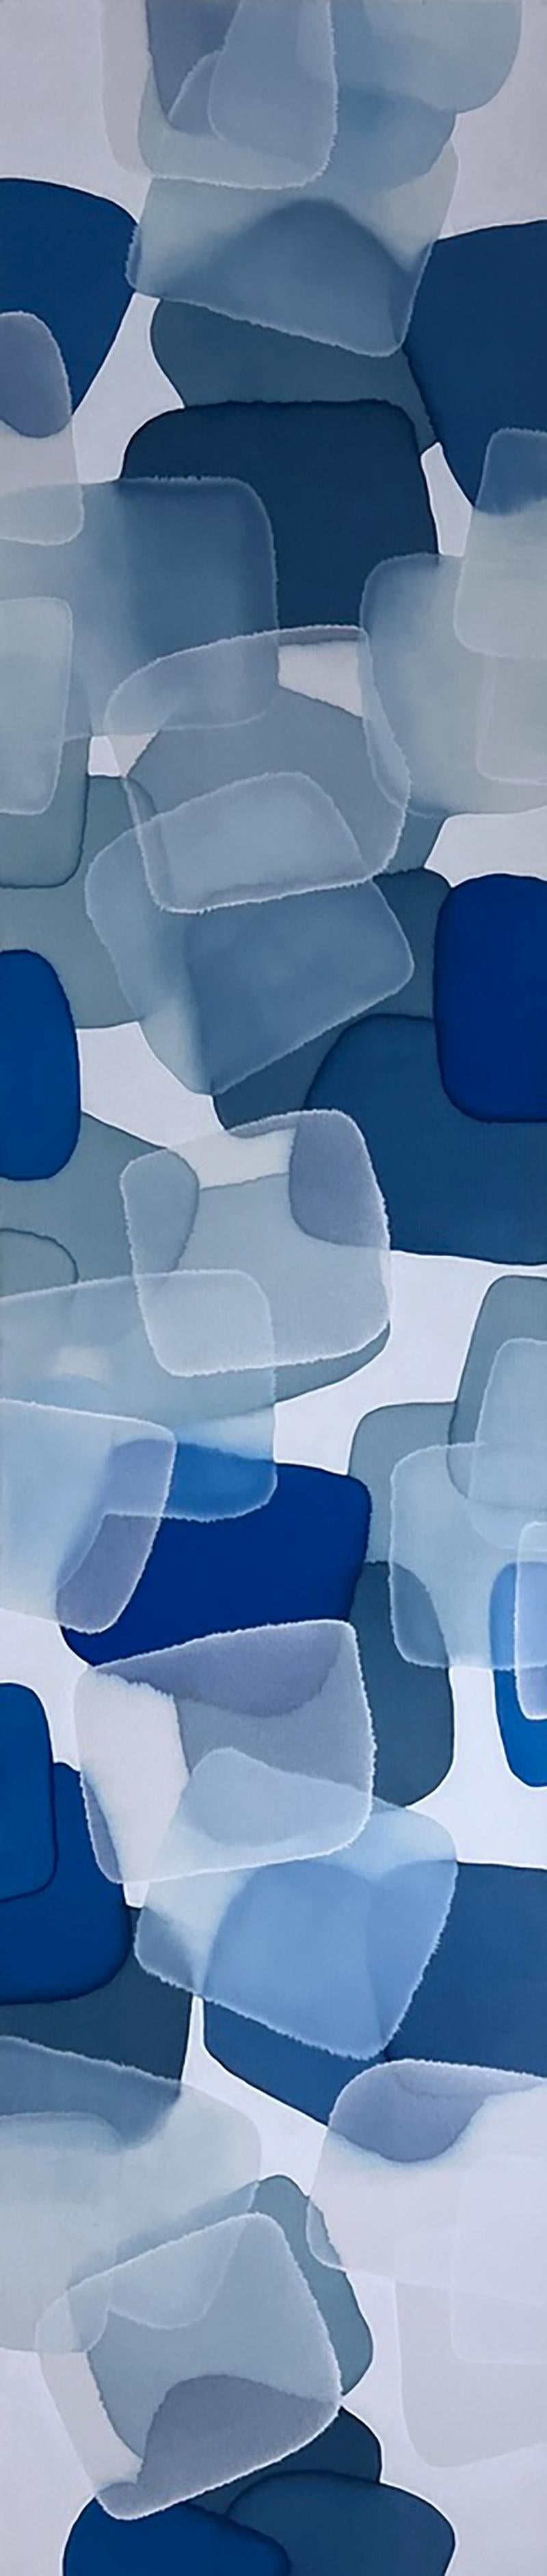 Abstrait/Nature/Bleu_Le rêve bleu profond_Horizontal/Vertical_Charlie Bluett 1